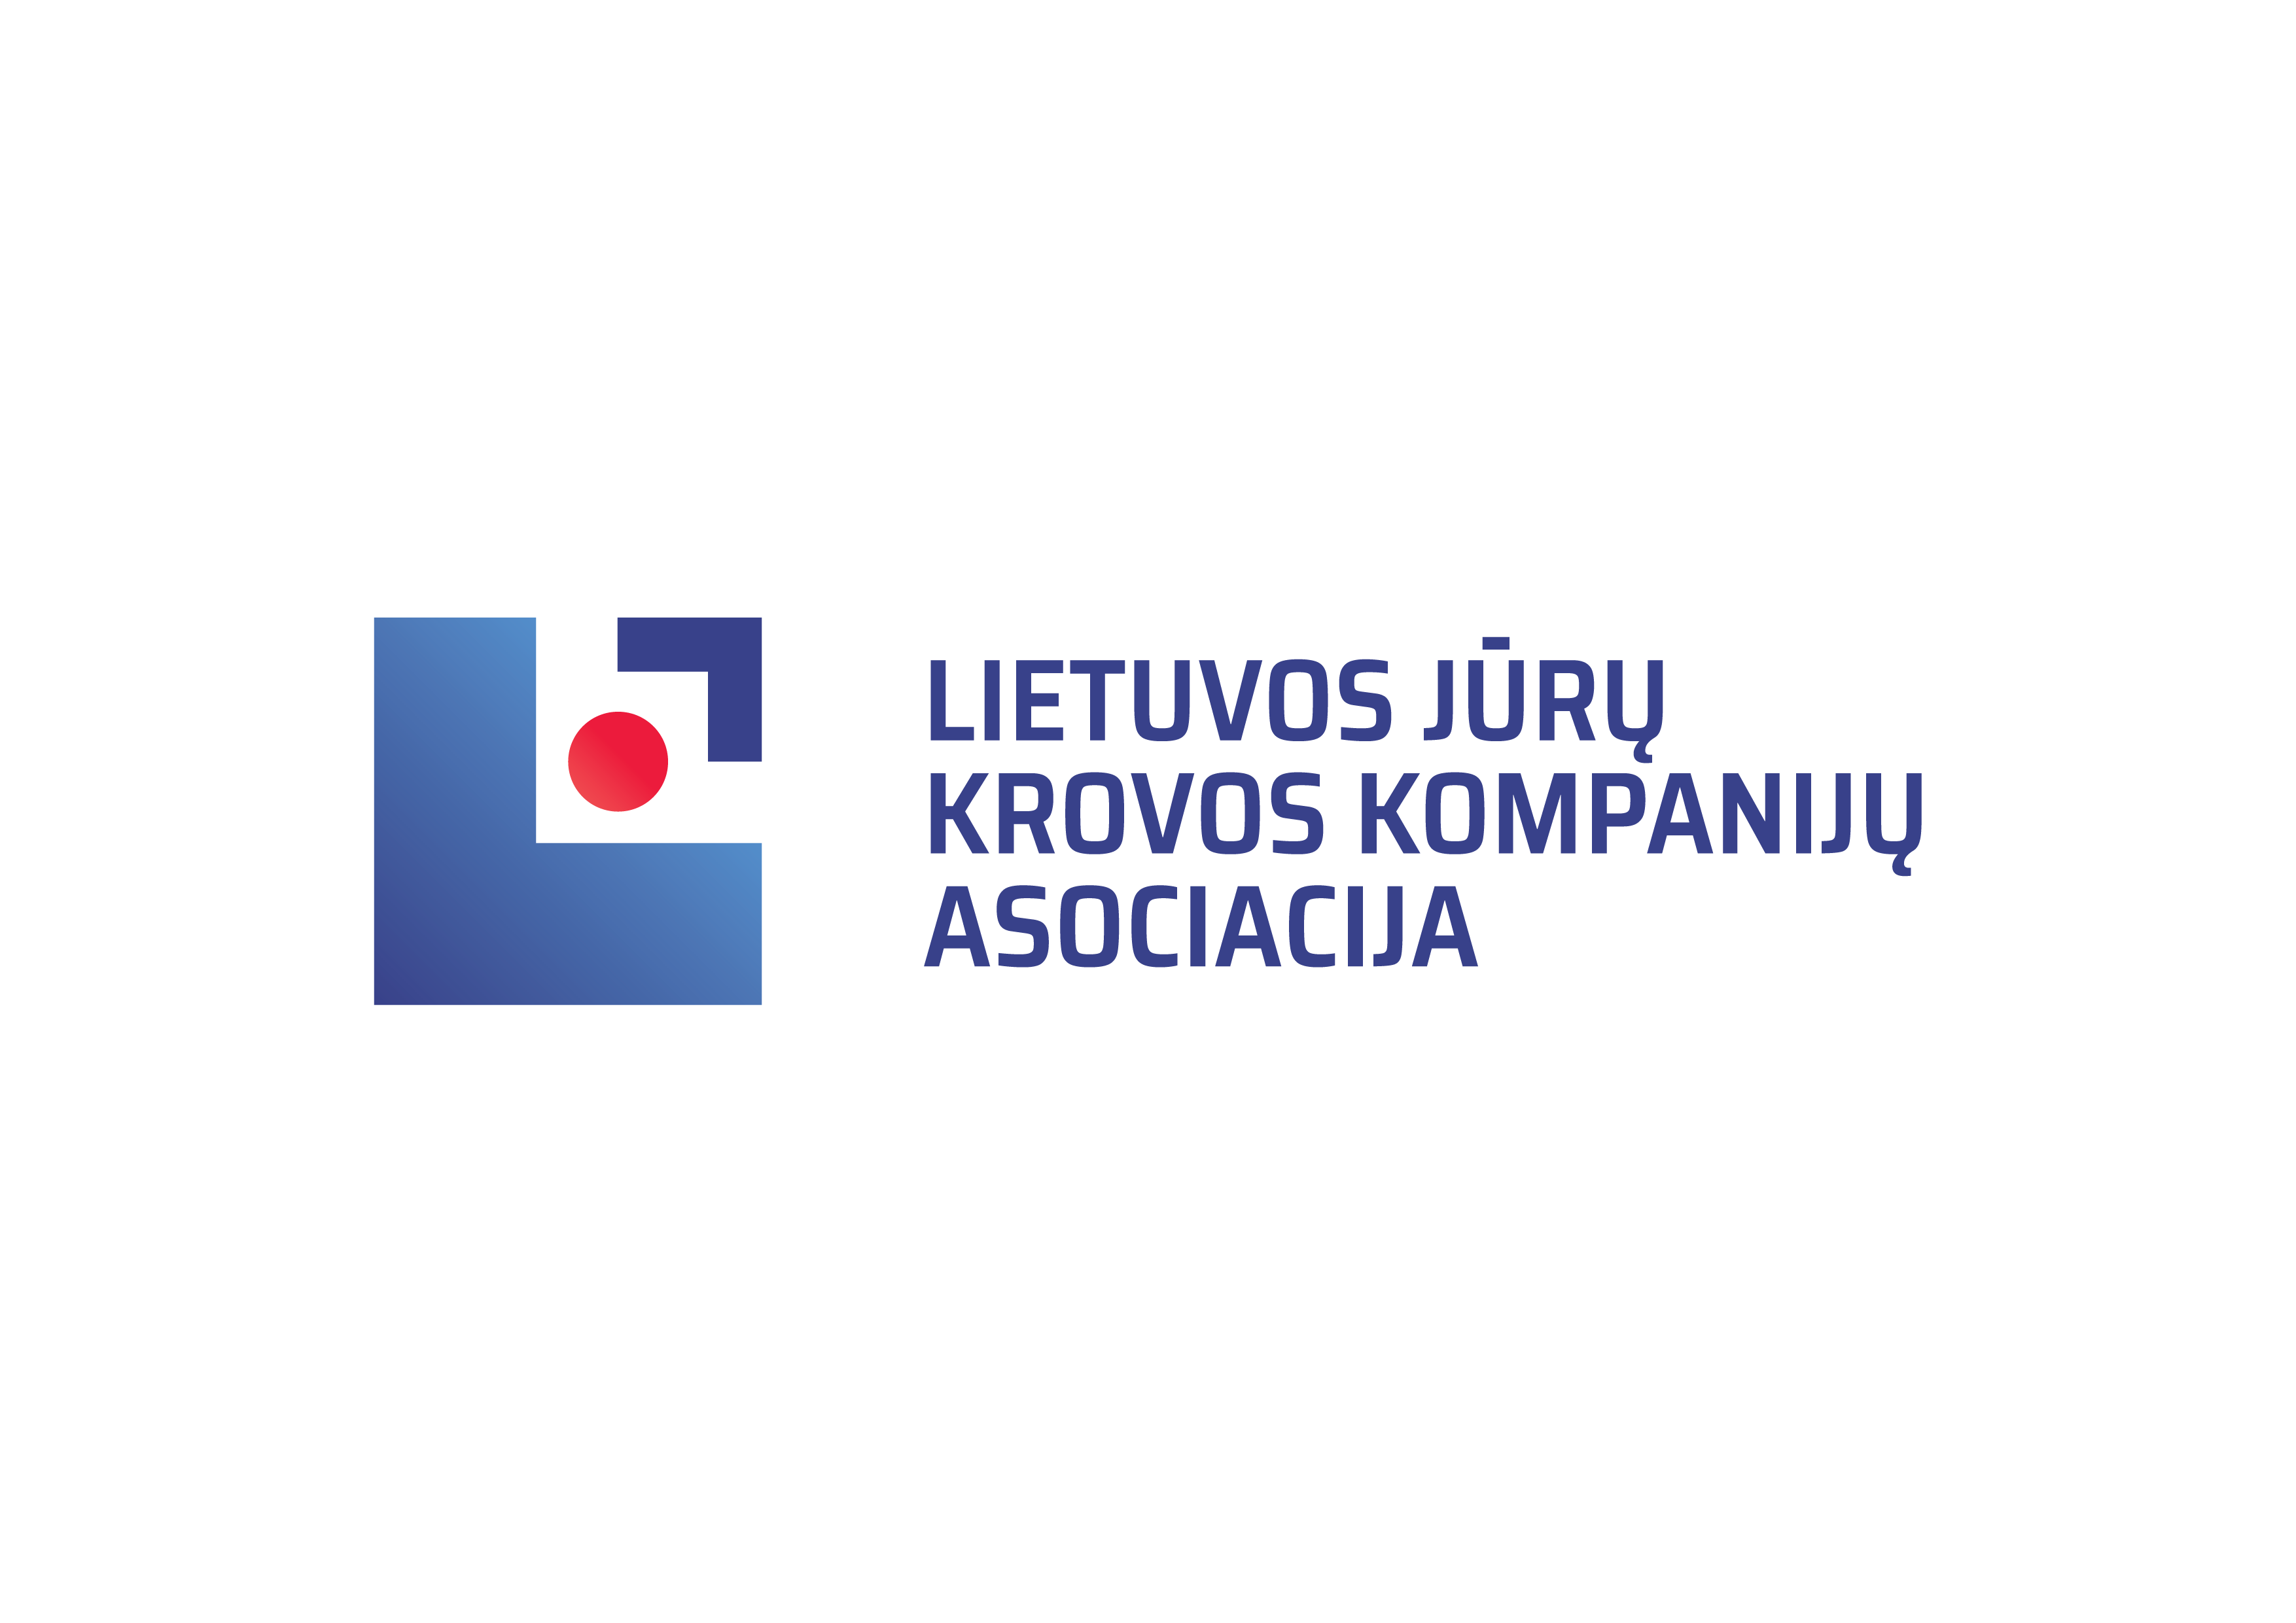 Lietuvos jūrų krovos kompanijų asociacija keičia vizualinį identitetą